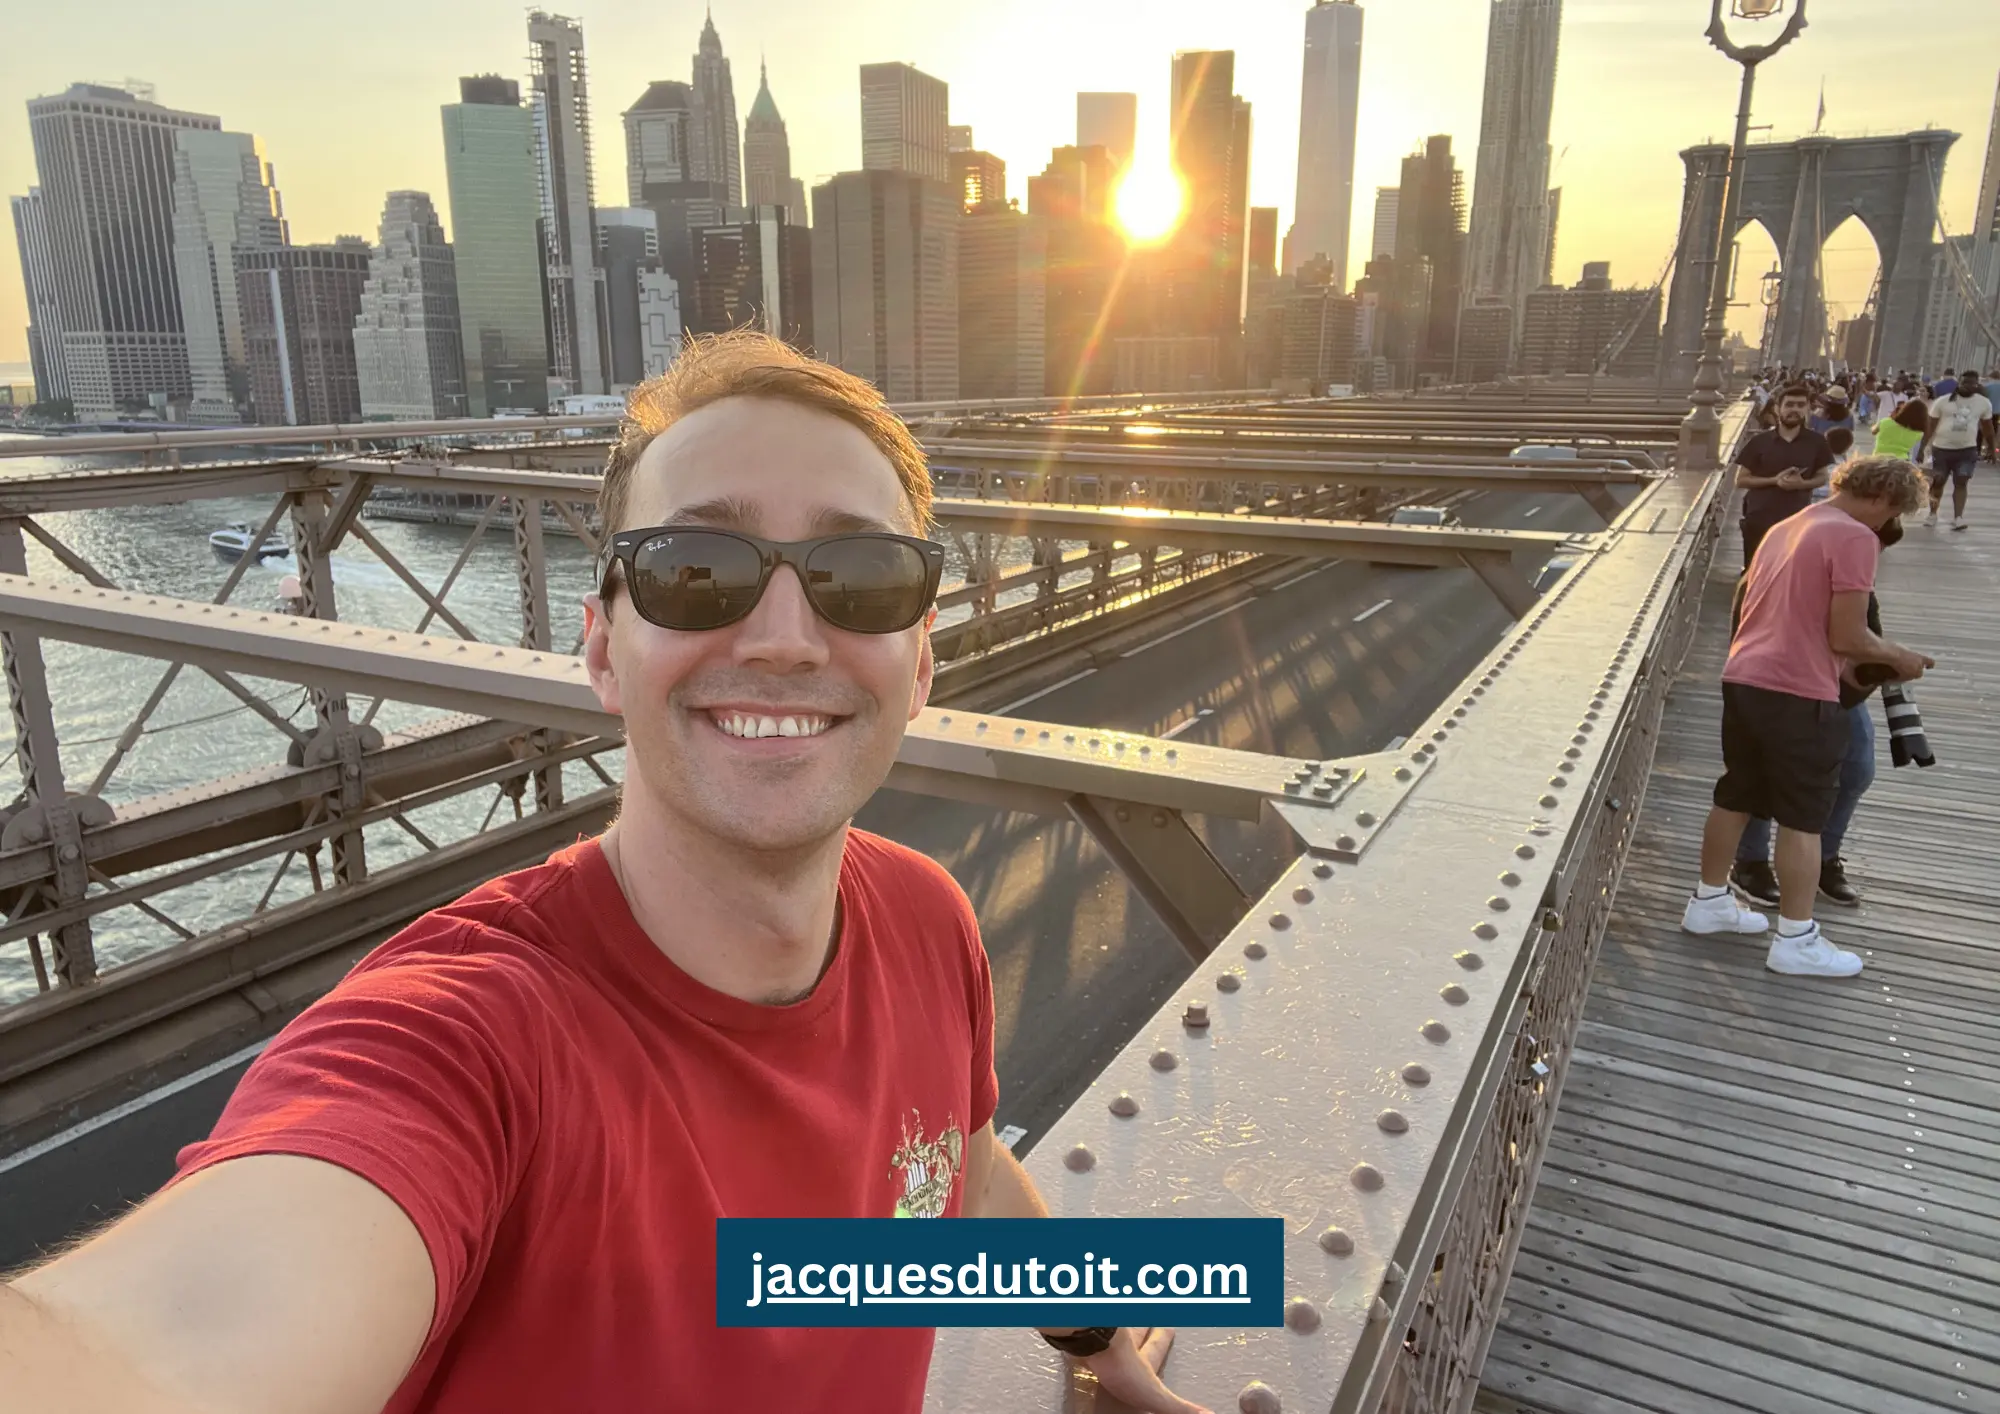 Jacques du Toit. New York - Brooklyn Bridge. jacquesdutoit.com